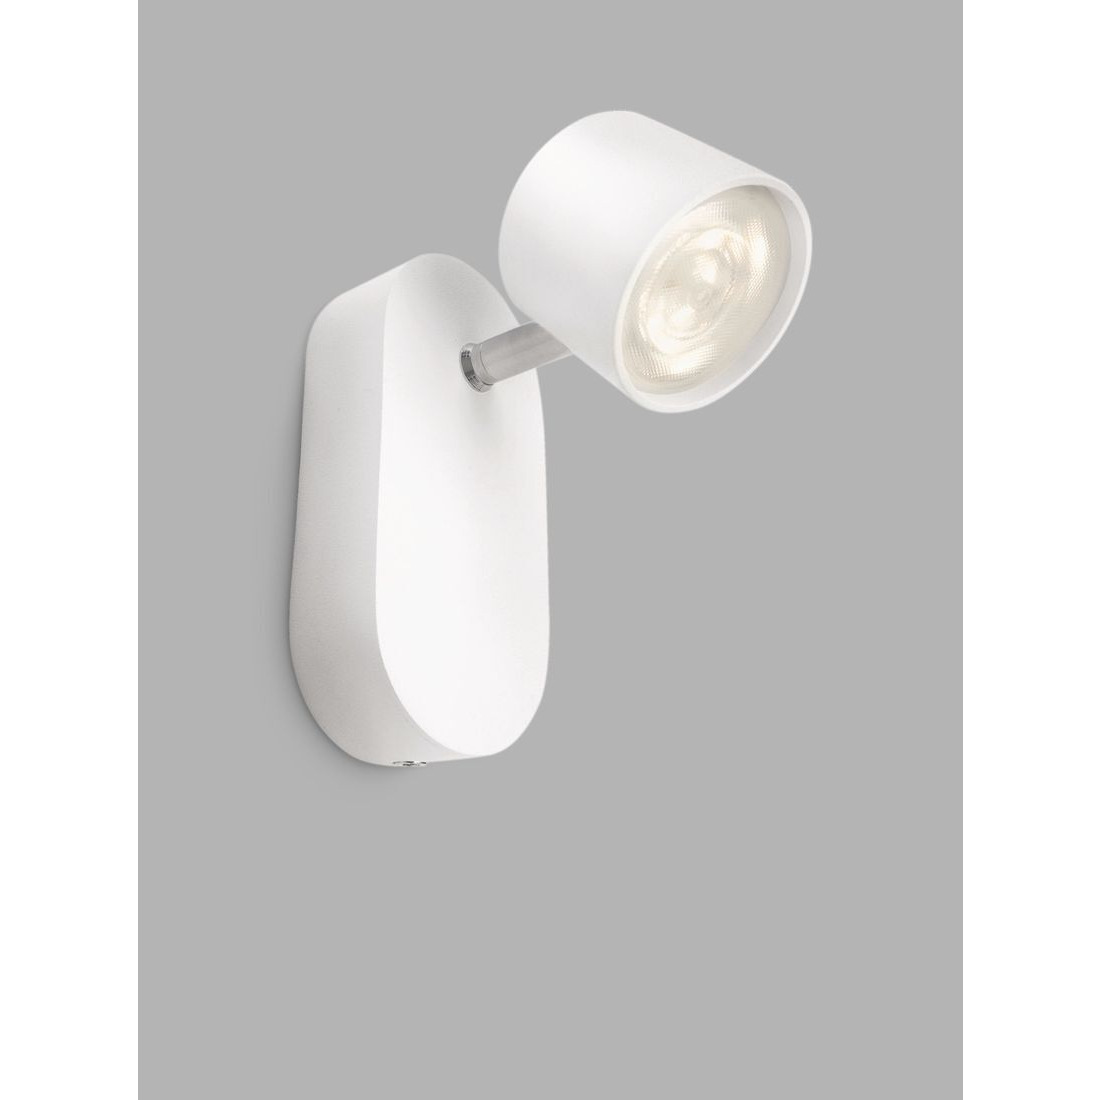 Philips Star LED Single Spotlight Wall Light, White - image 1